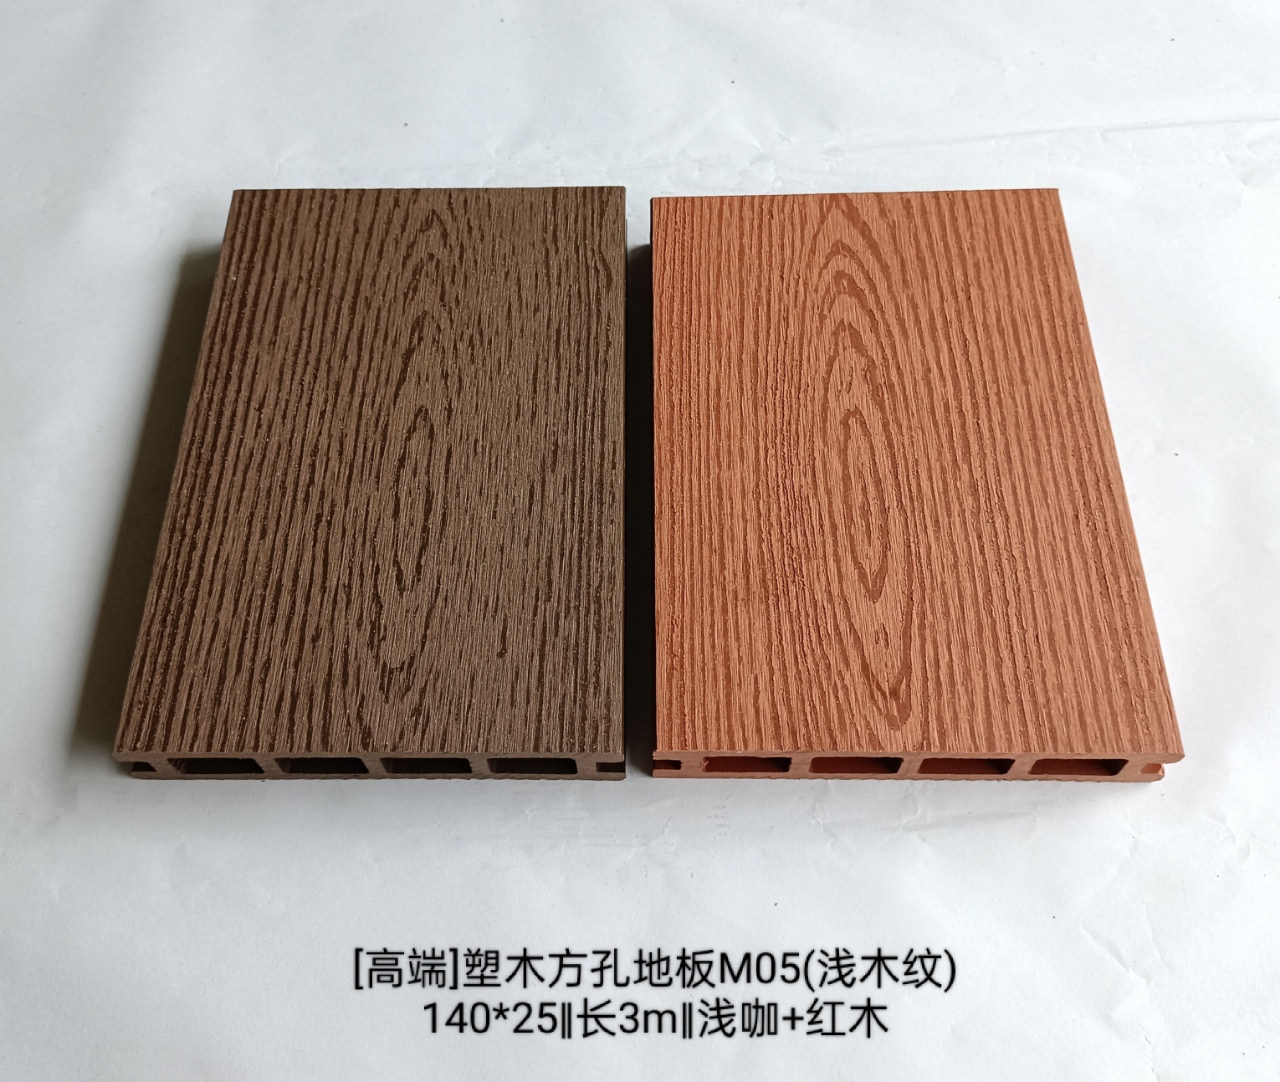 3.品名:塑木方孔地板M05批发